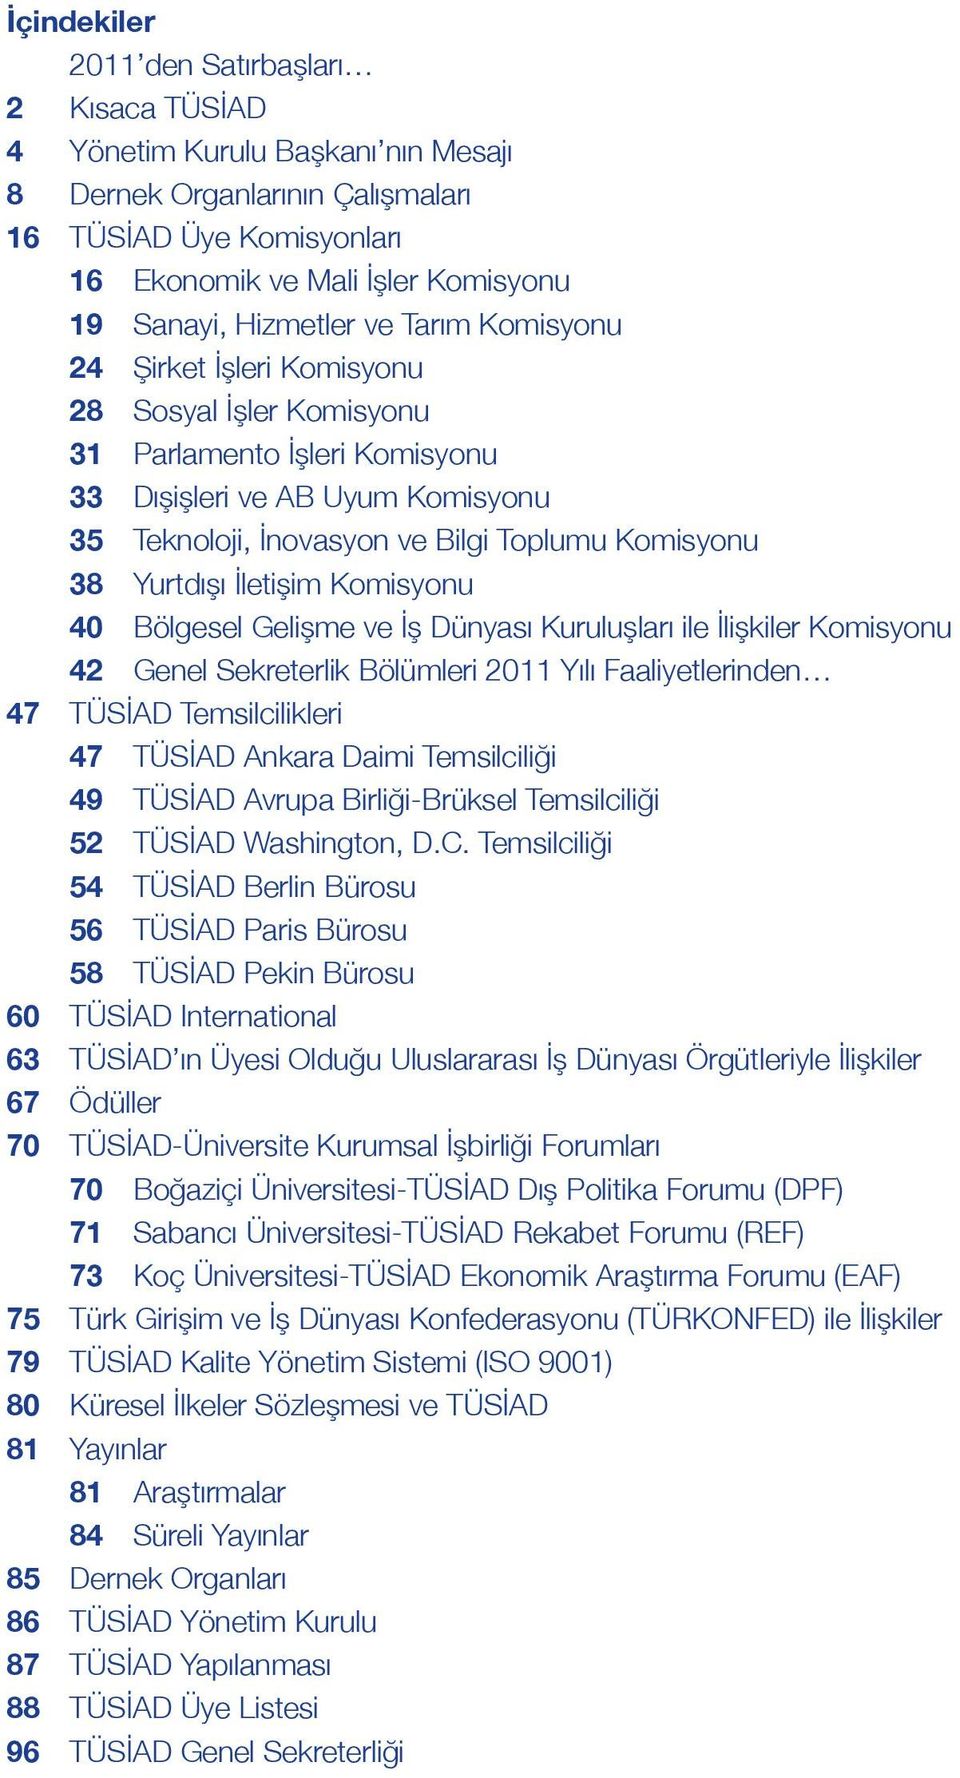 38 Yurtdışı İletişim Komisyonu 40 Bölgesel Gelişme ve İş Dünyası Kuruluşları ile İlişkiler Komisyonu 42 Genel Sekreterlik Bölümleri 2011 Yılı Faaliyetlerinden 47 TÜSİAD Temsilcilikleri 47 TÜSİAD